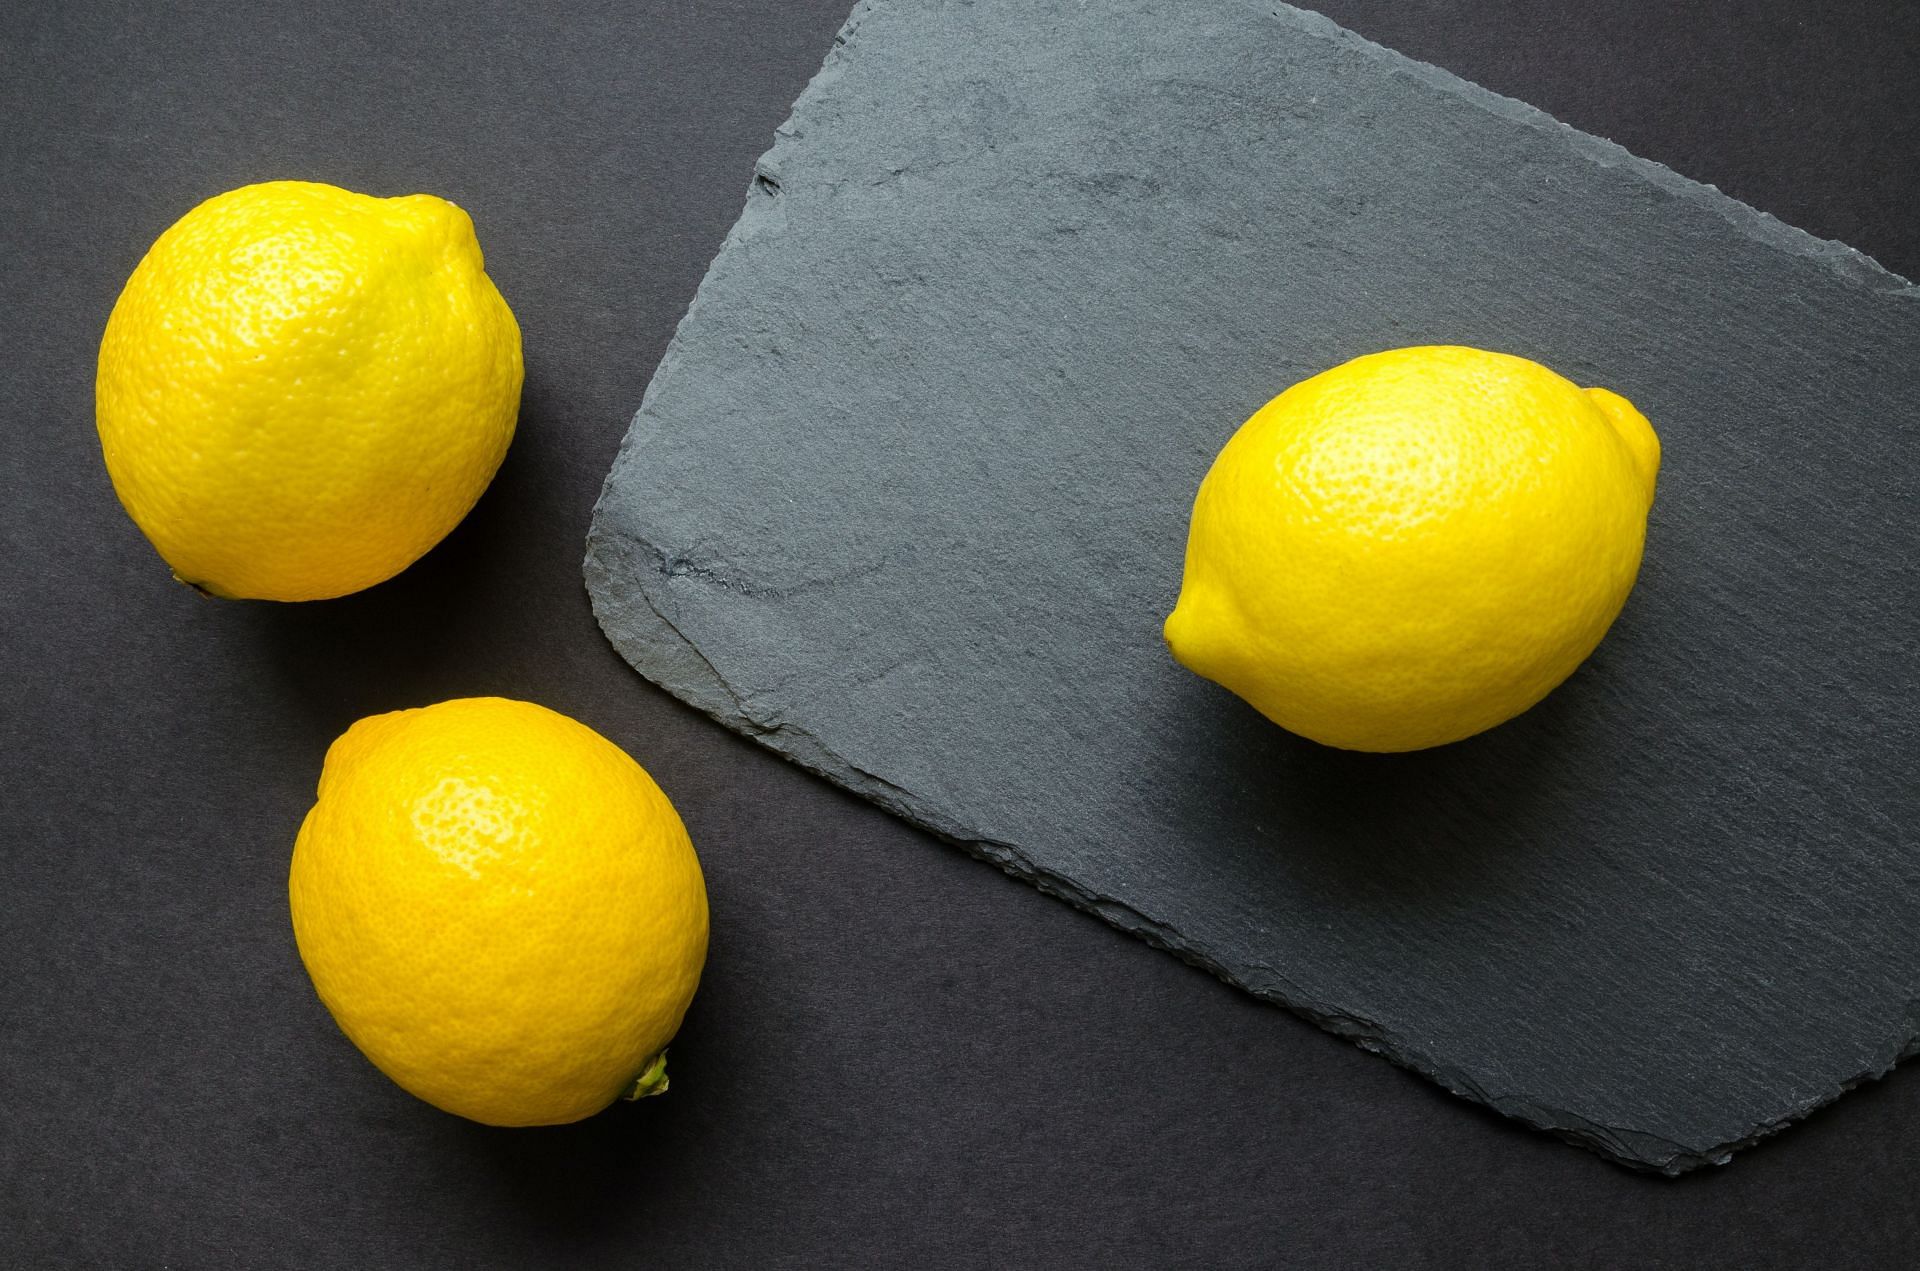 Lemons are very acidic. (Image via Pexels/Lukas)